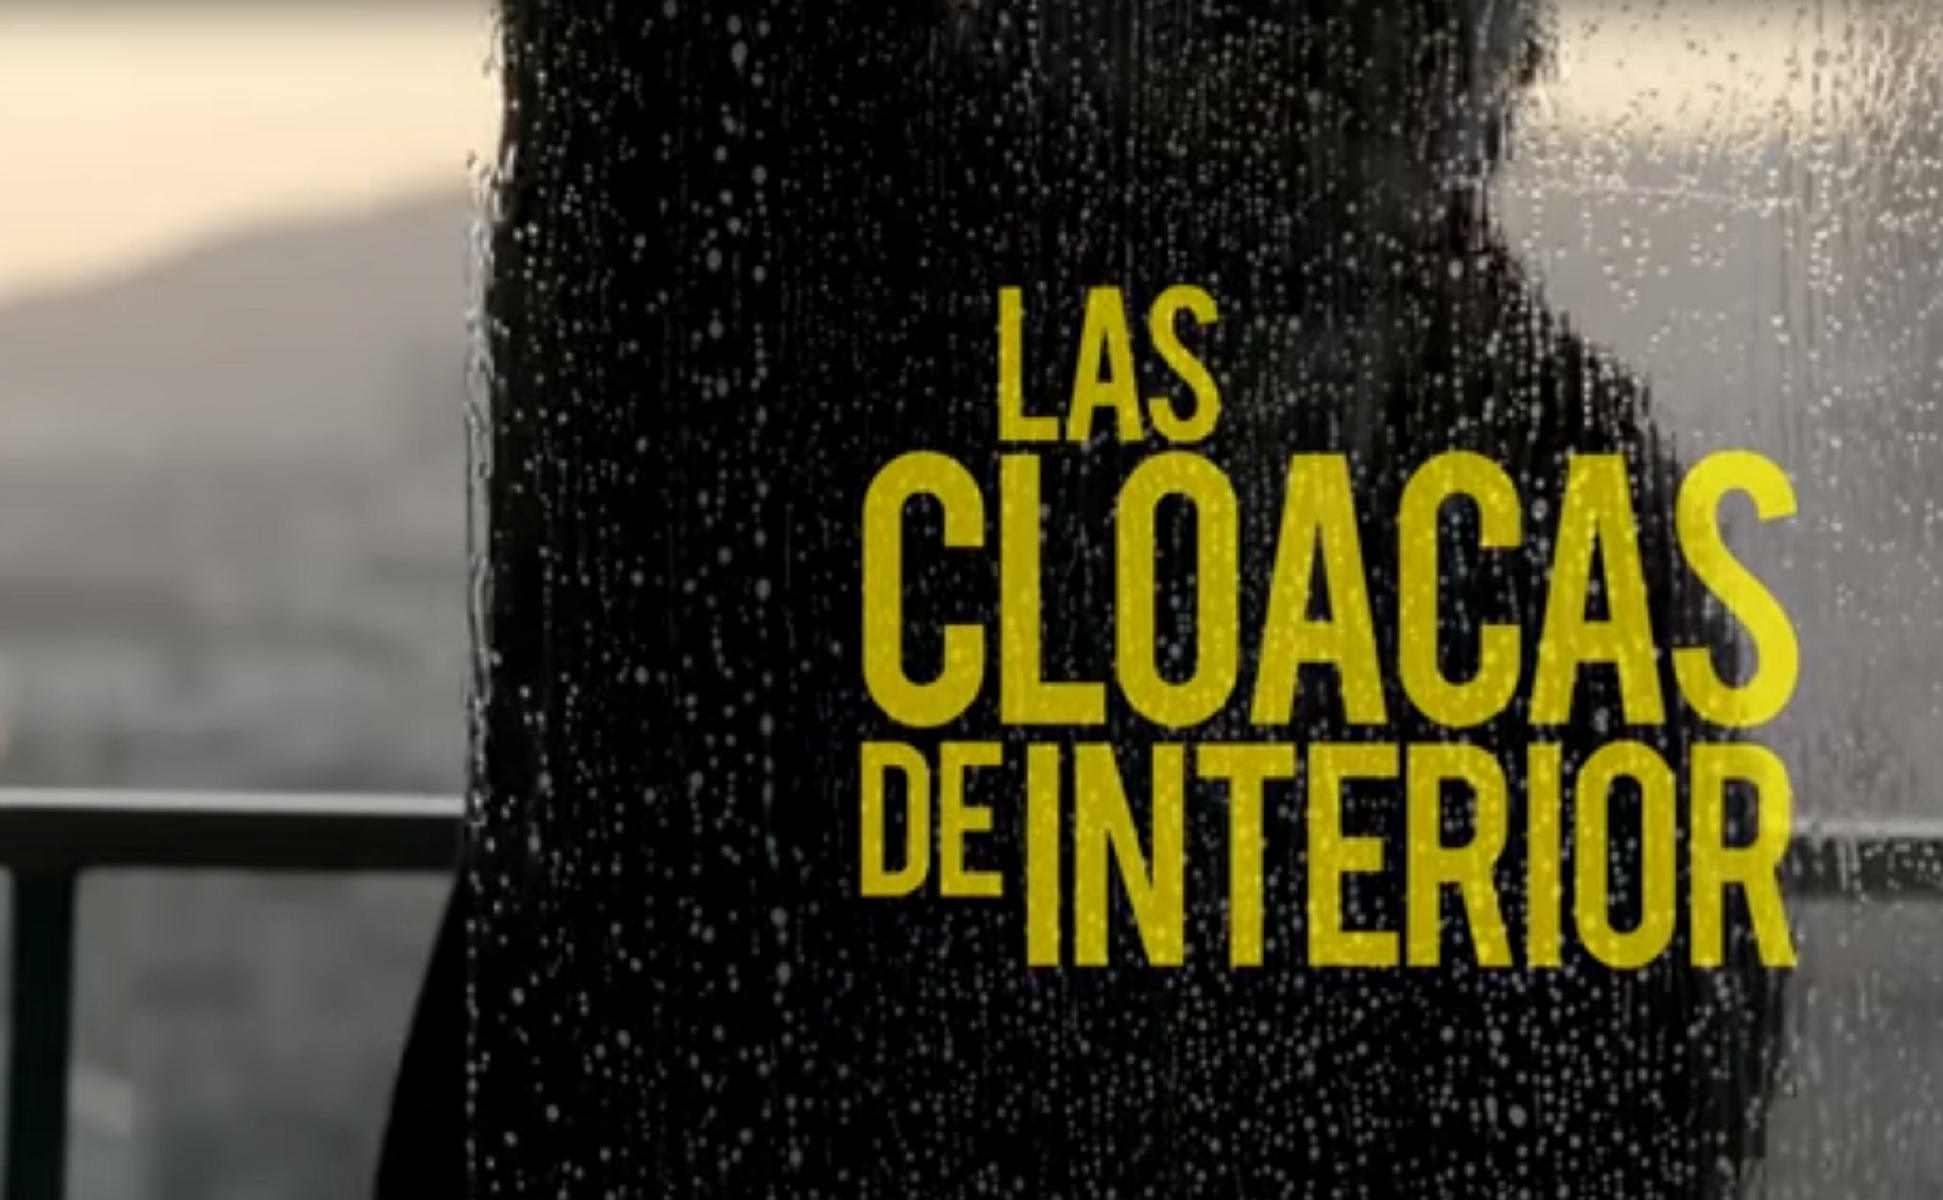 ‘Las Cloacas de Interior’ arrasa a TV3 amb un 30% de ‘share’